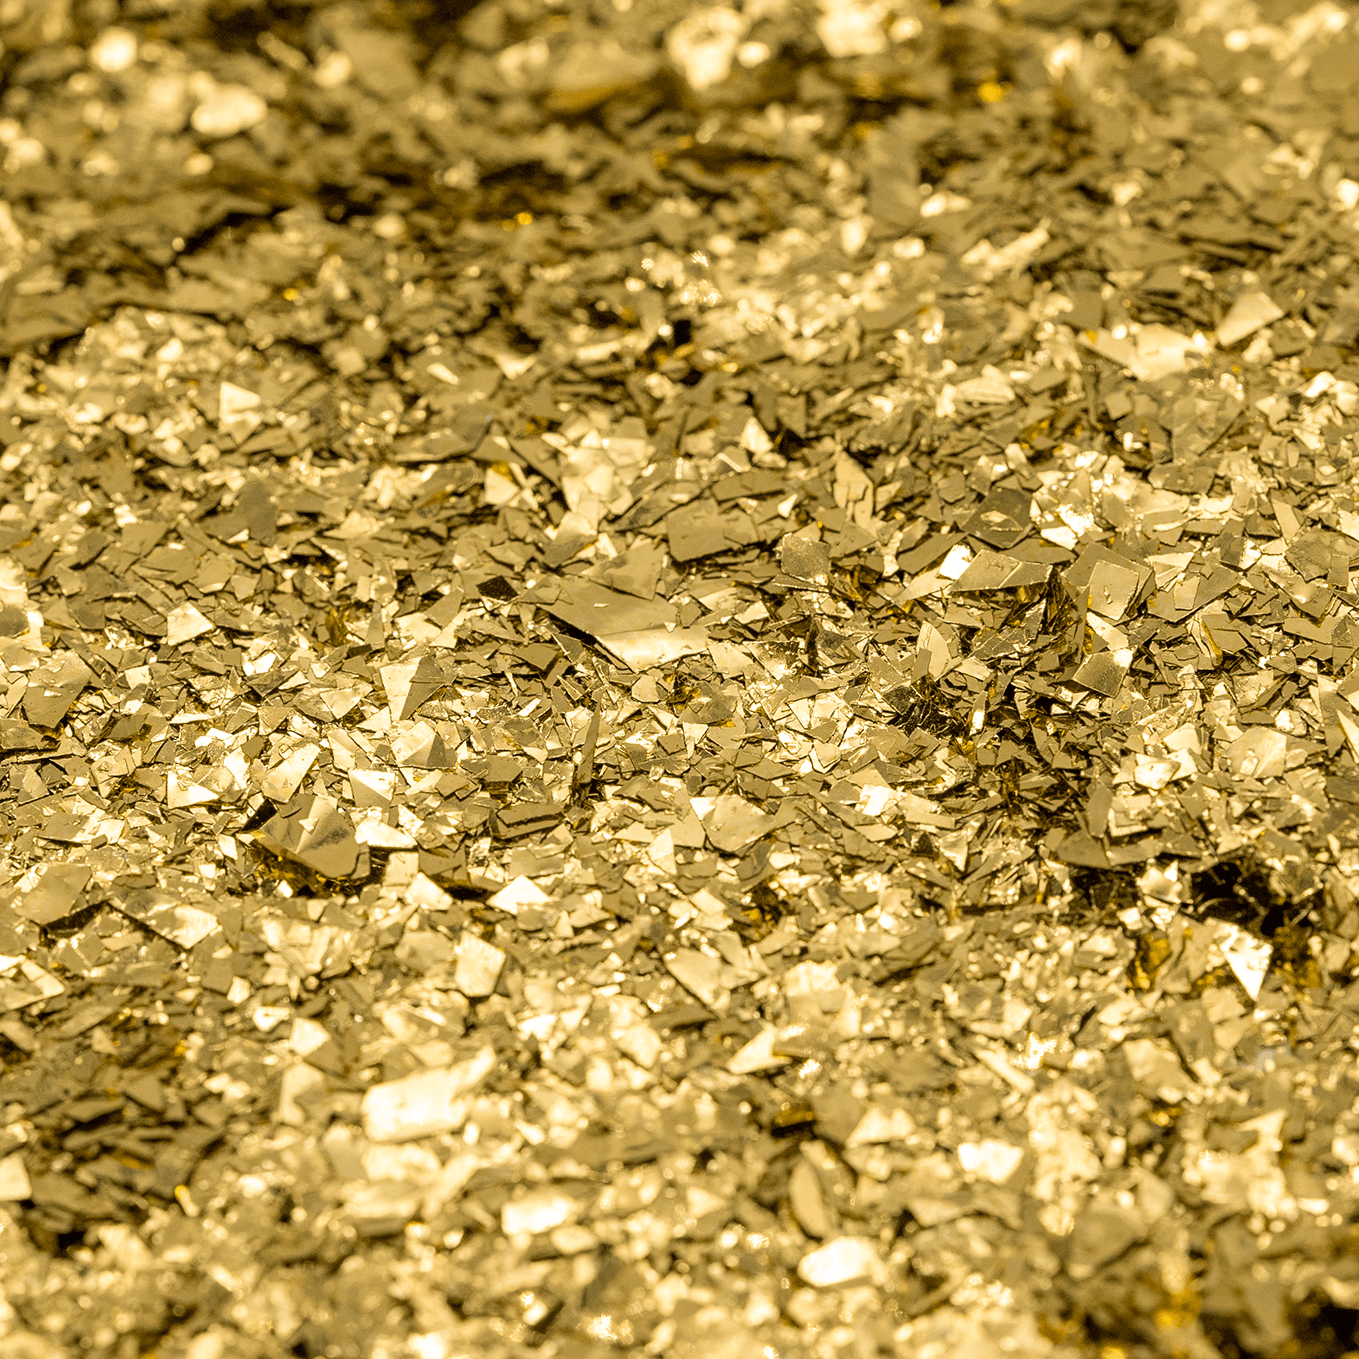 Gold Random 60g - Resi Glitter